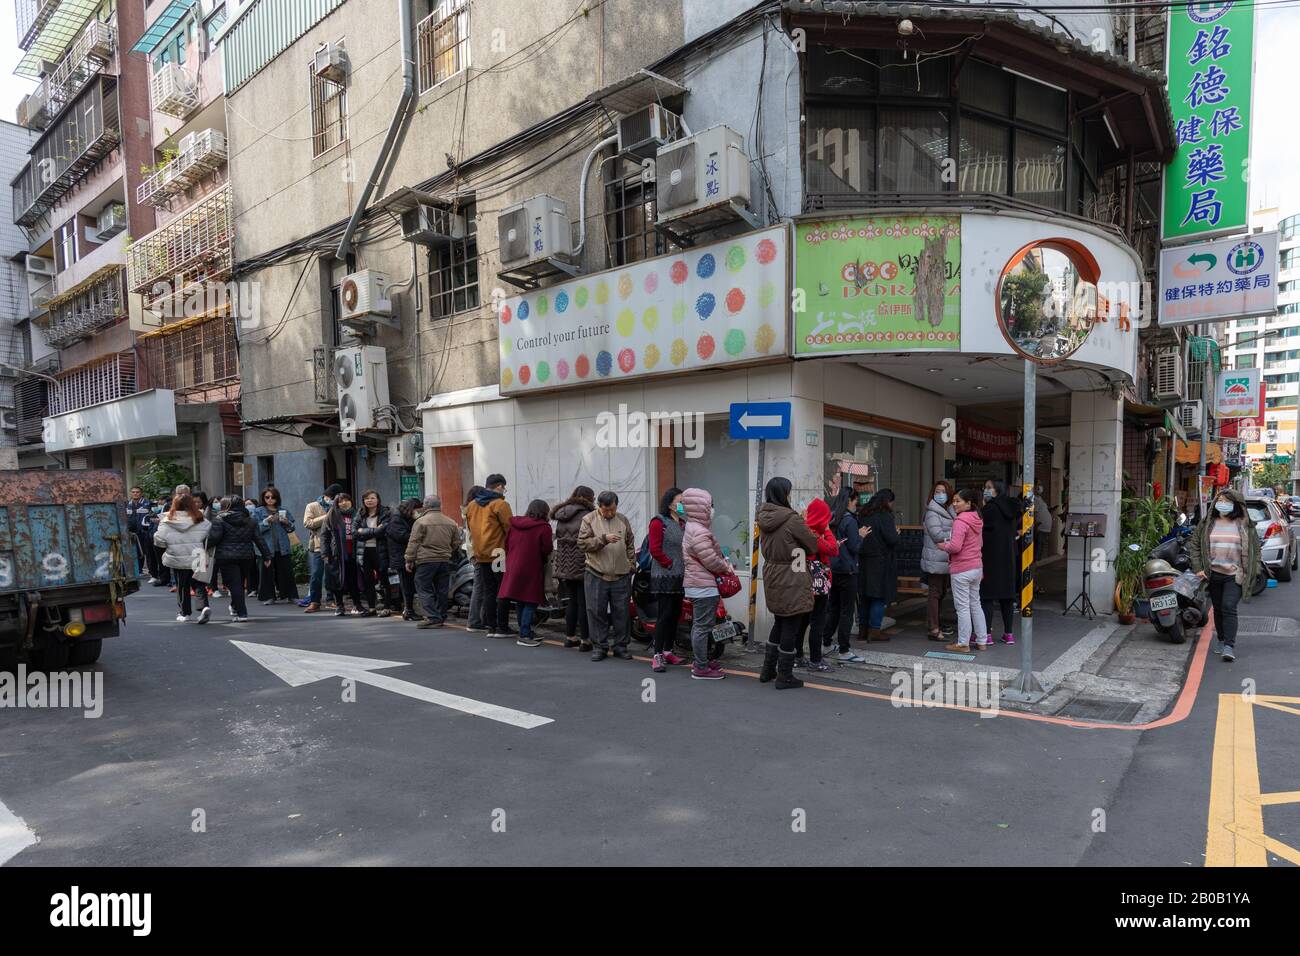 Los residentes de Taipei se alinean en una farmacia local para comprar máscaras faciales racionadas como protección contra la epidemia de coronavirus Covid-19. Foto de stock